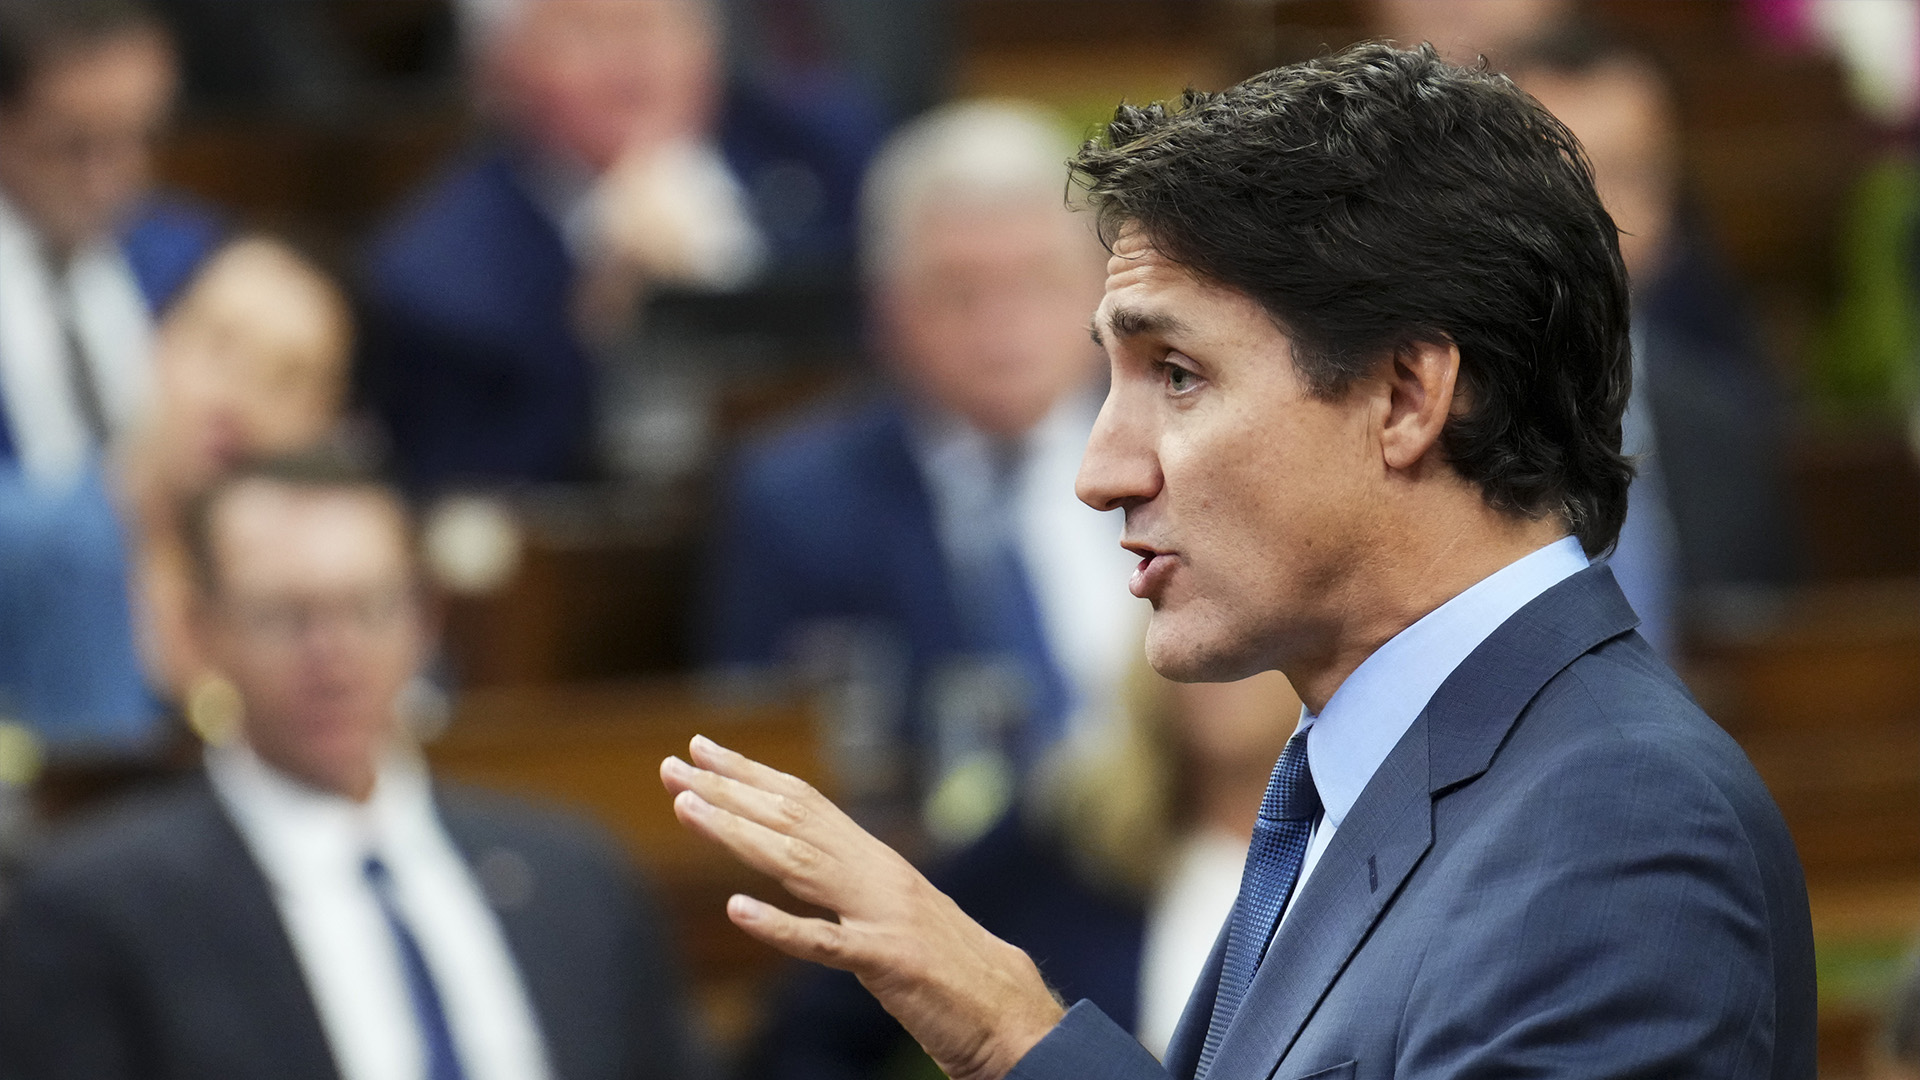 Lundi, le premier ministre Justin Trudeau a annoncé que les services de renseignement canadiens enquêtaient sur «un lien potentiel» entre le gouvernement indien et la mort du leader sikh Hardeep Singh Nijjar en Colombie-Britannique.